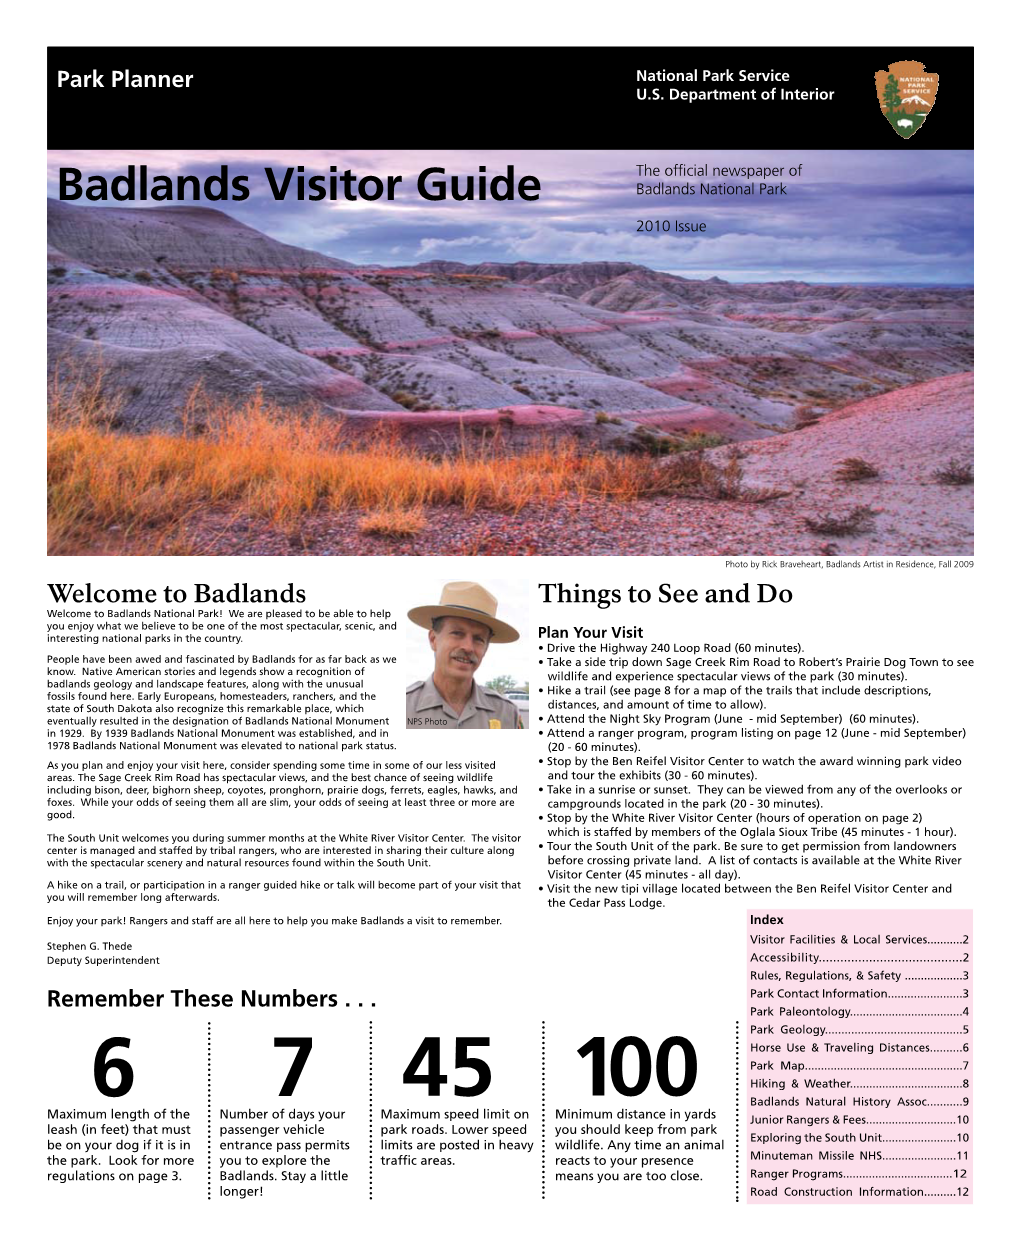 Badlands Visitor Guide Badlands National Park 2010 Issue